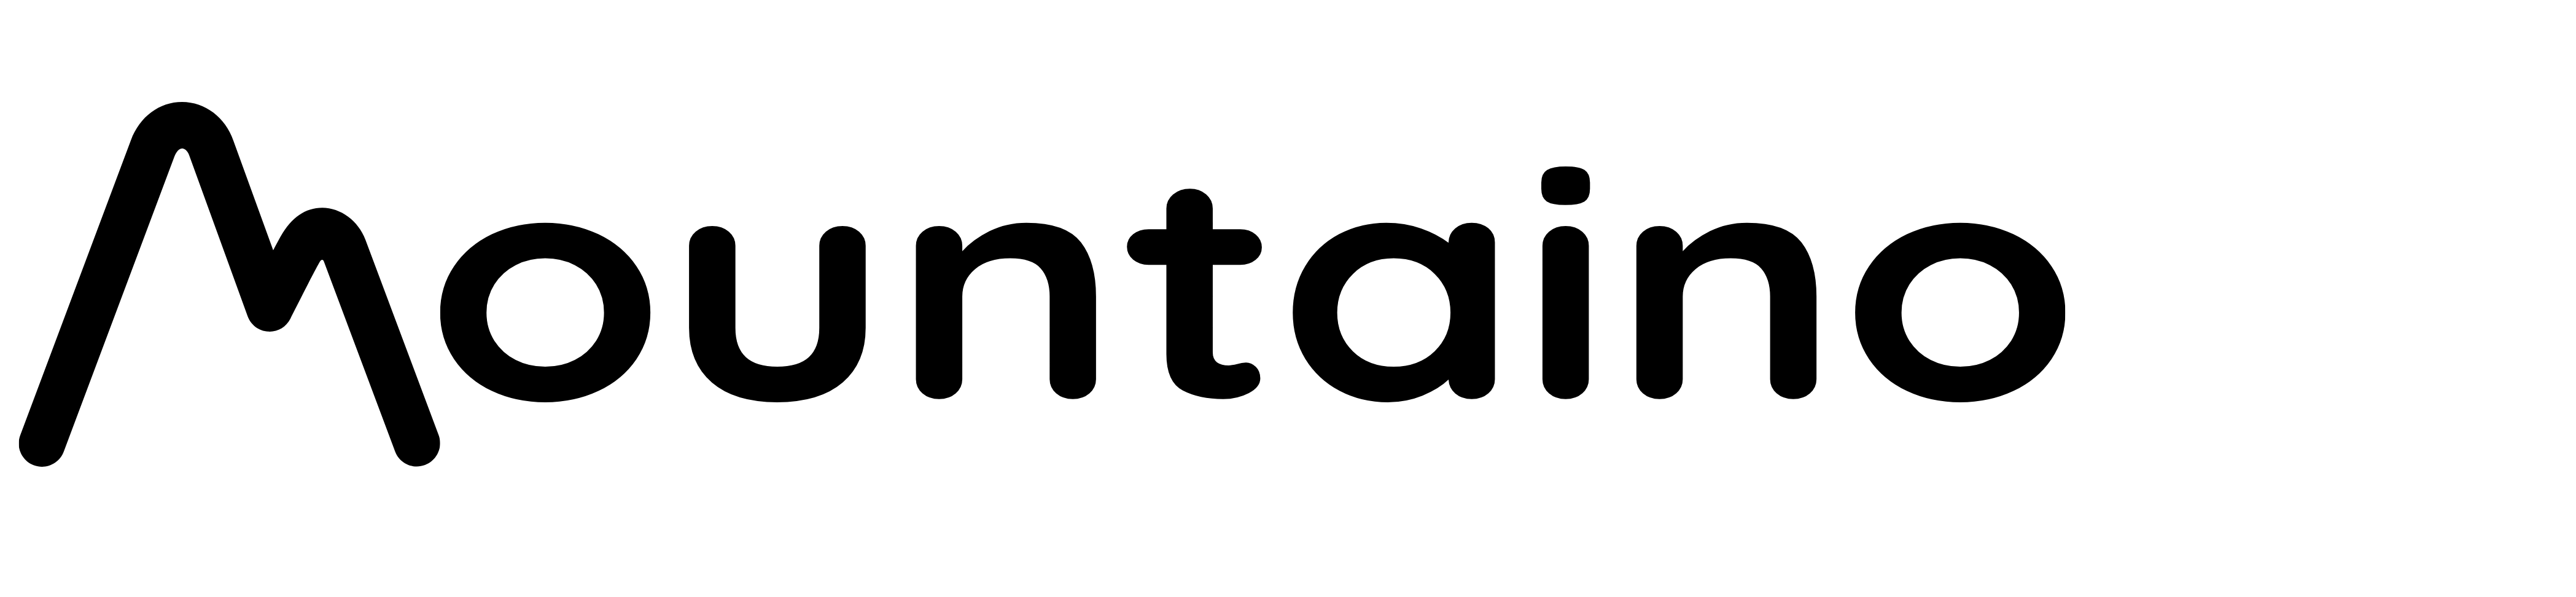 mountaino logo